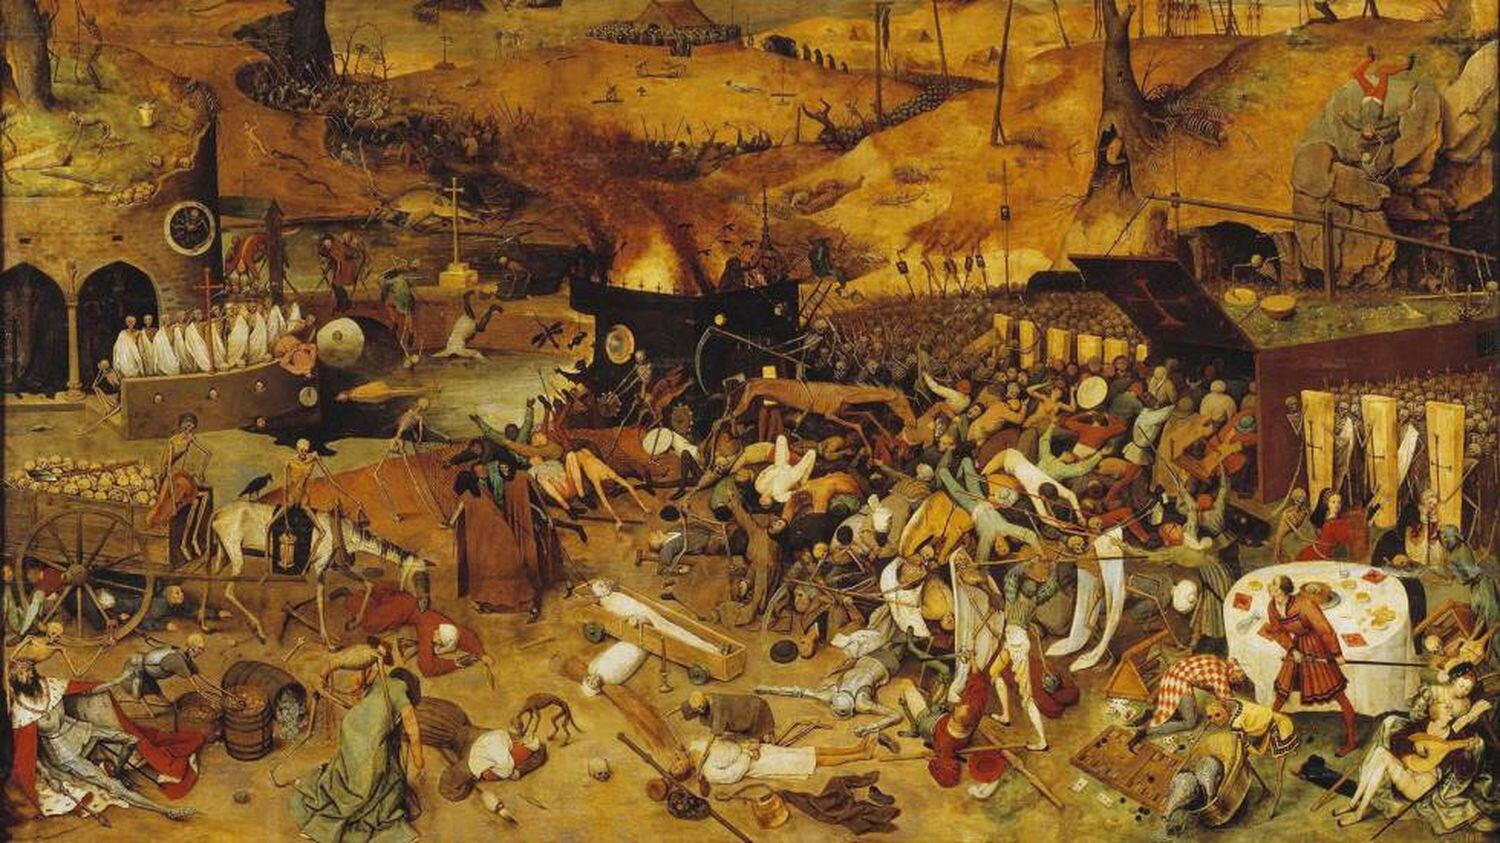 'El triunfo de la muerte', de Pieter Brueghel el Viejo, refleja el clima de terror tras la peste negra.